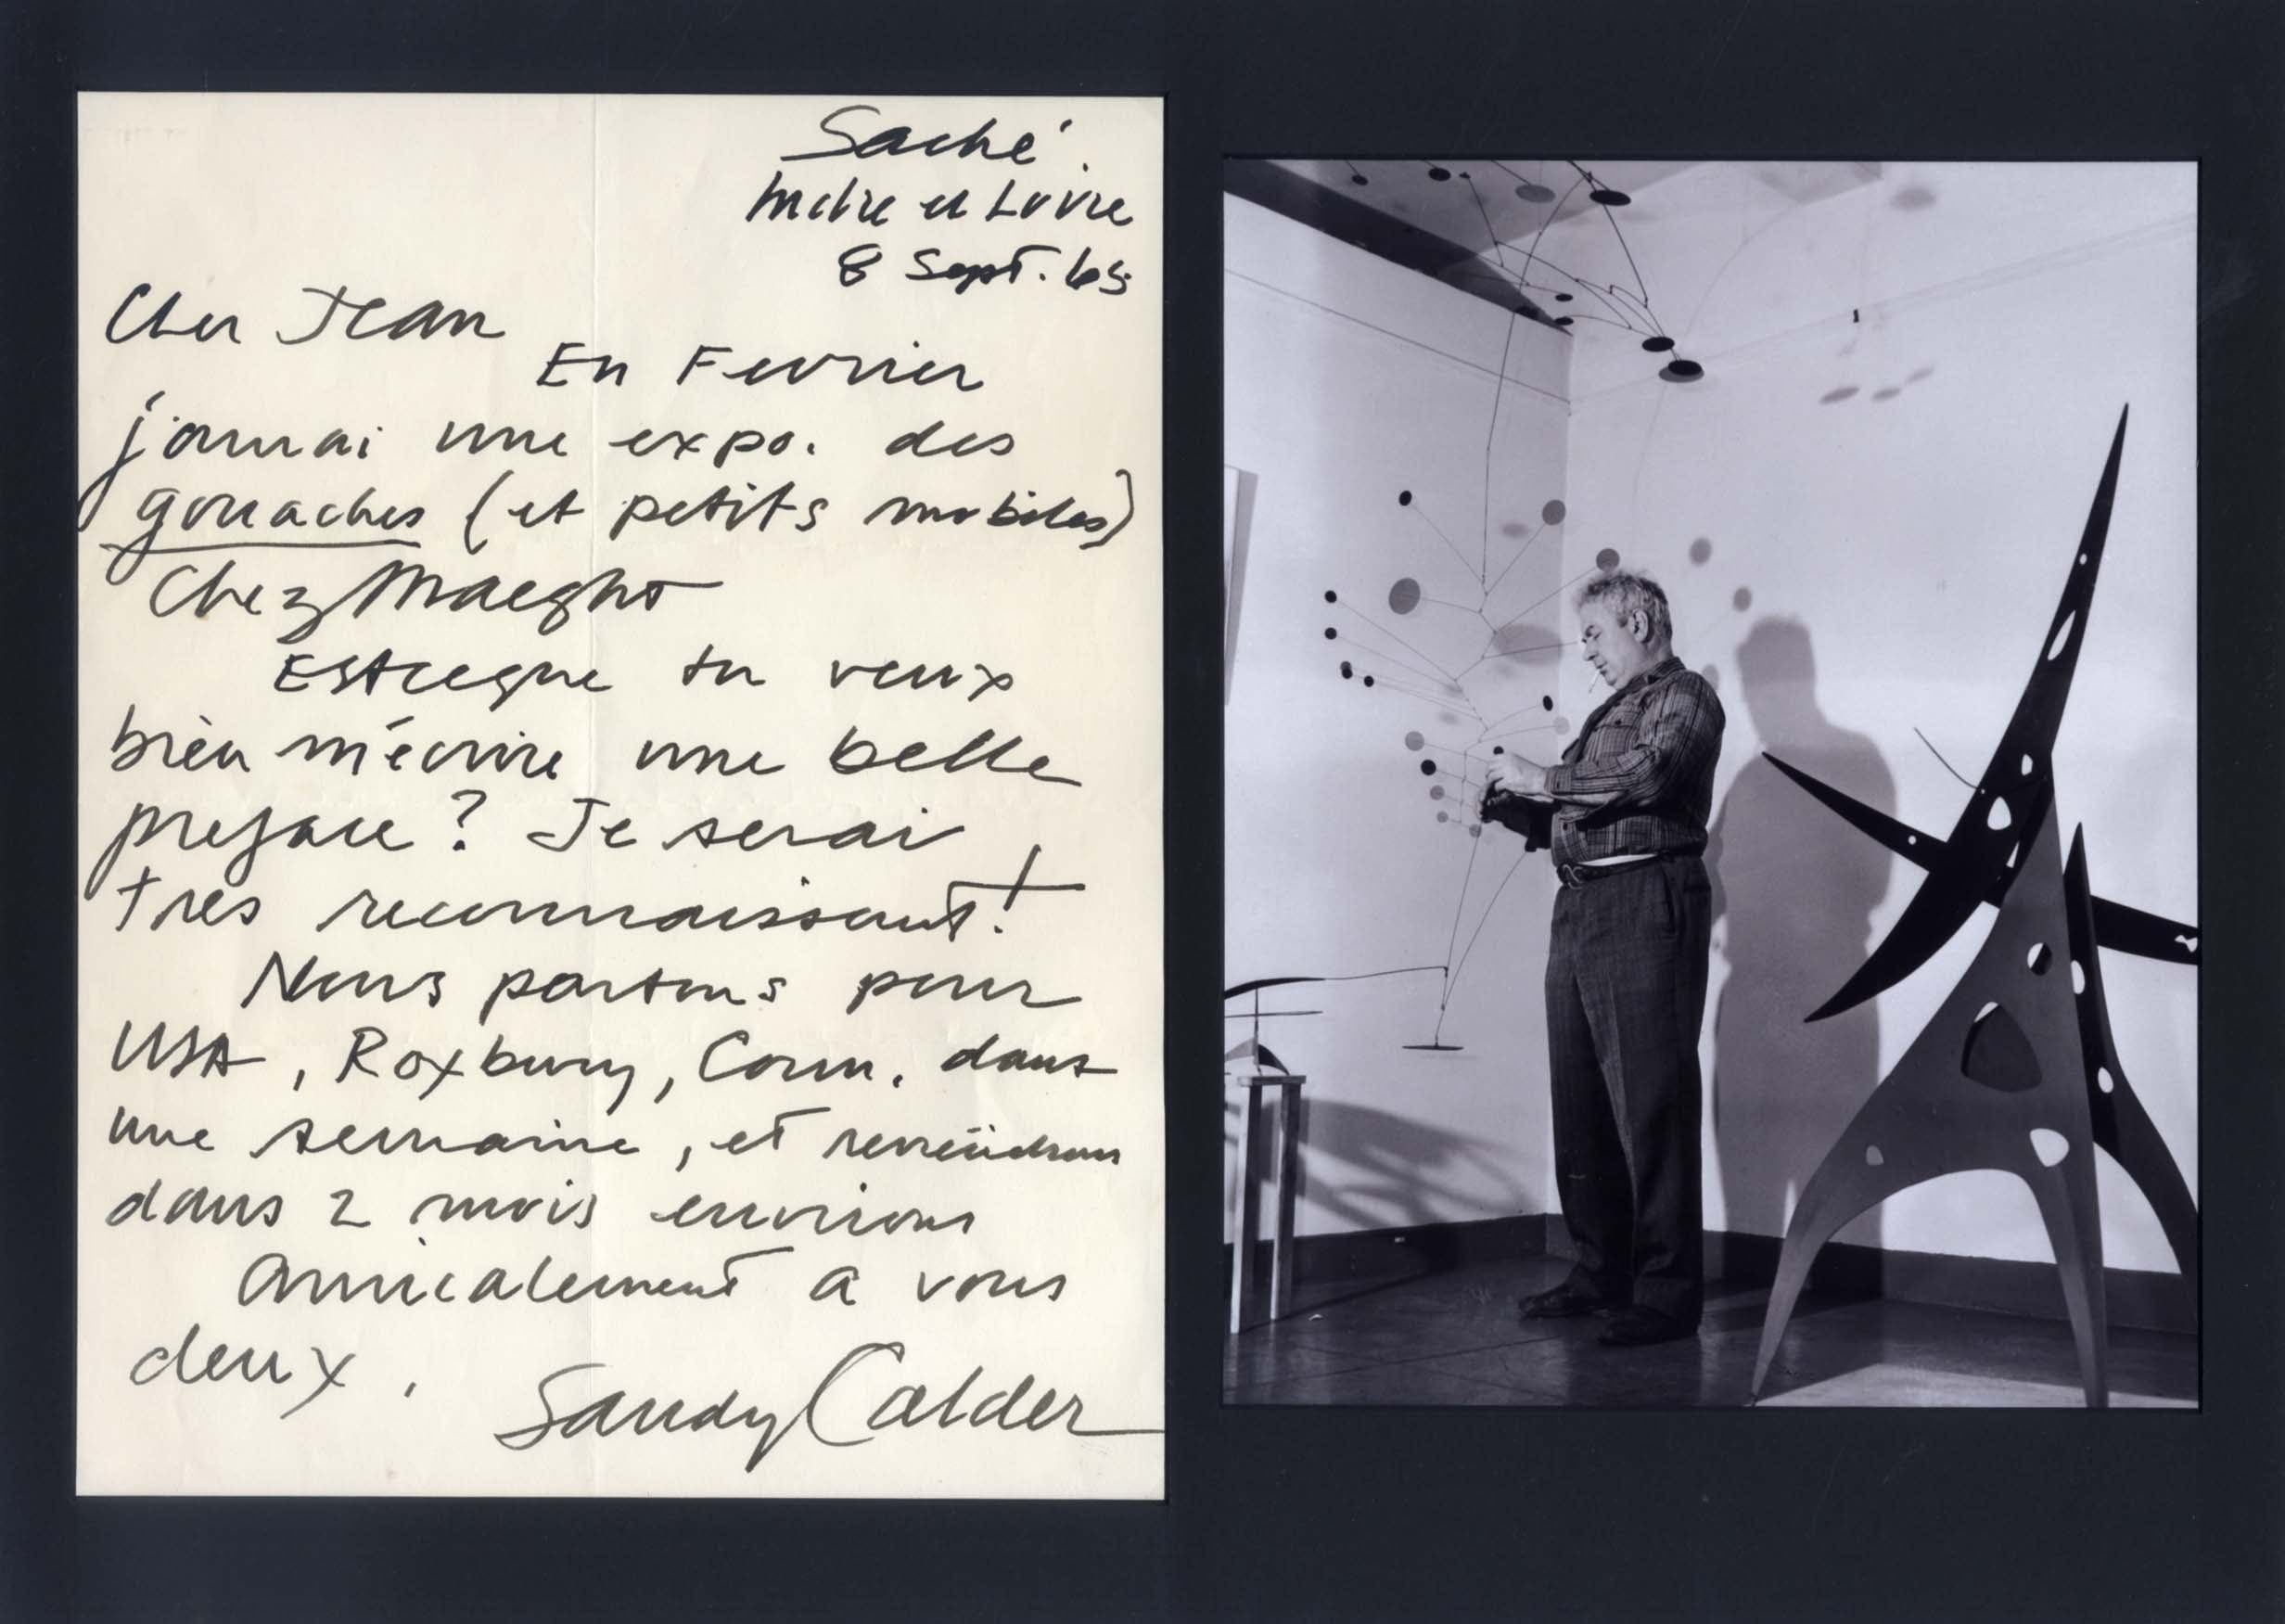 Alexander Calder Autograph Autogramm | ID 8335468265621